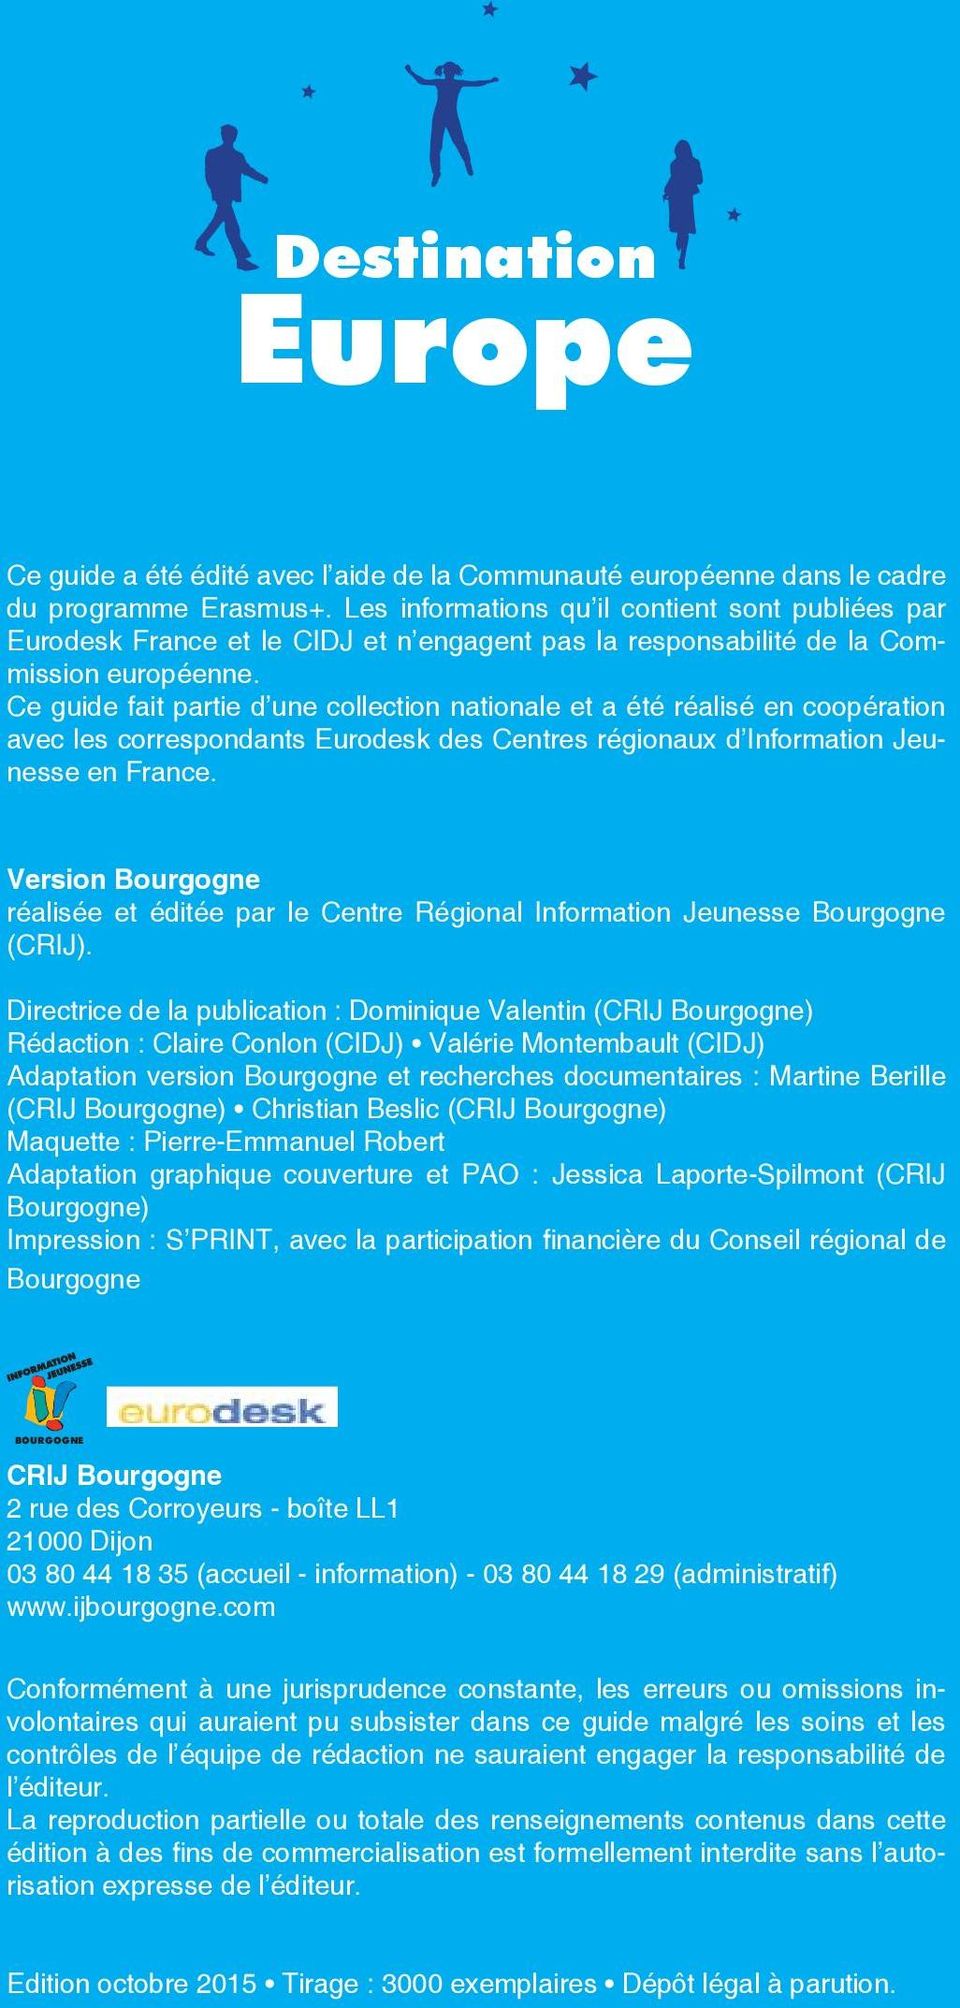 Ce guide fait partie d une collection nationale et a été réalisé en coopération avec les correspondants Eurodesk des Centres régionaux d Information Jeunesse en France.